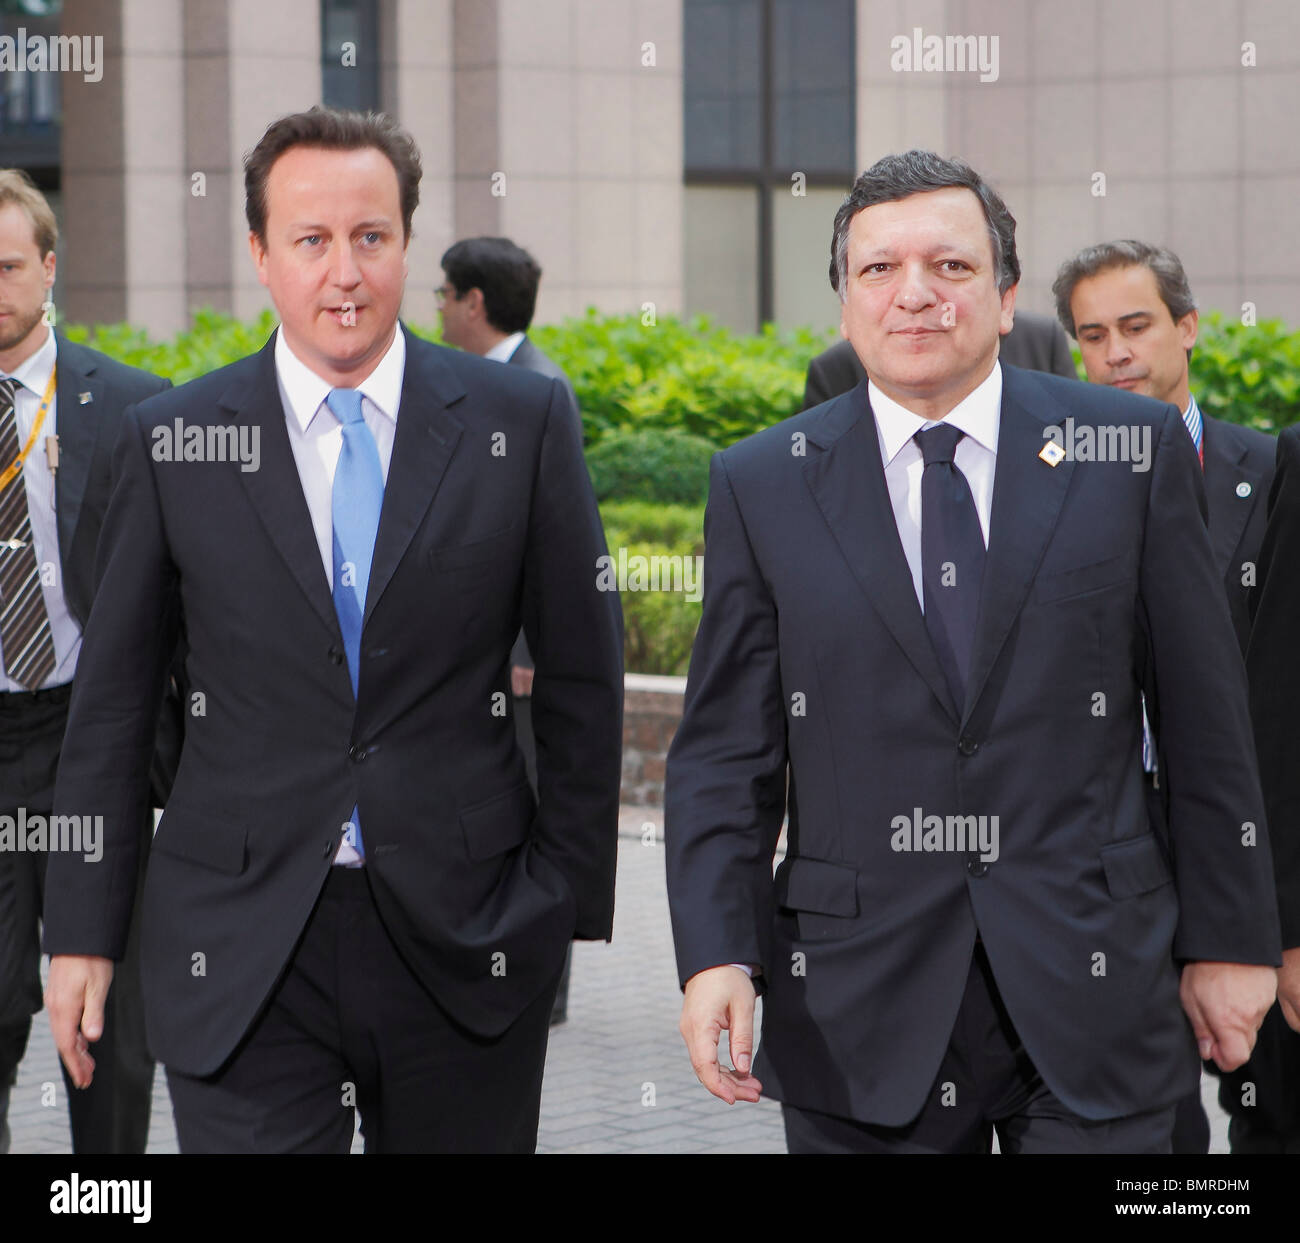 Premierminister des Vereinigten Königreichs David Cameron Ankunft bei den europäischen Ministerrat in Brüssel am 17. Juni 2010 Wit Stockfoto